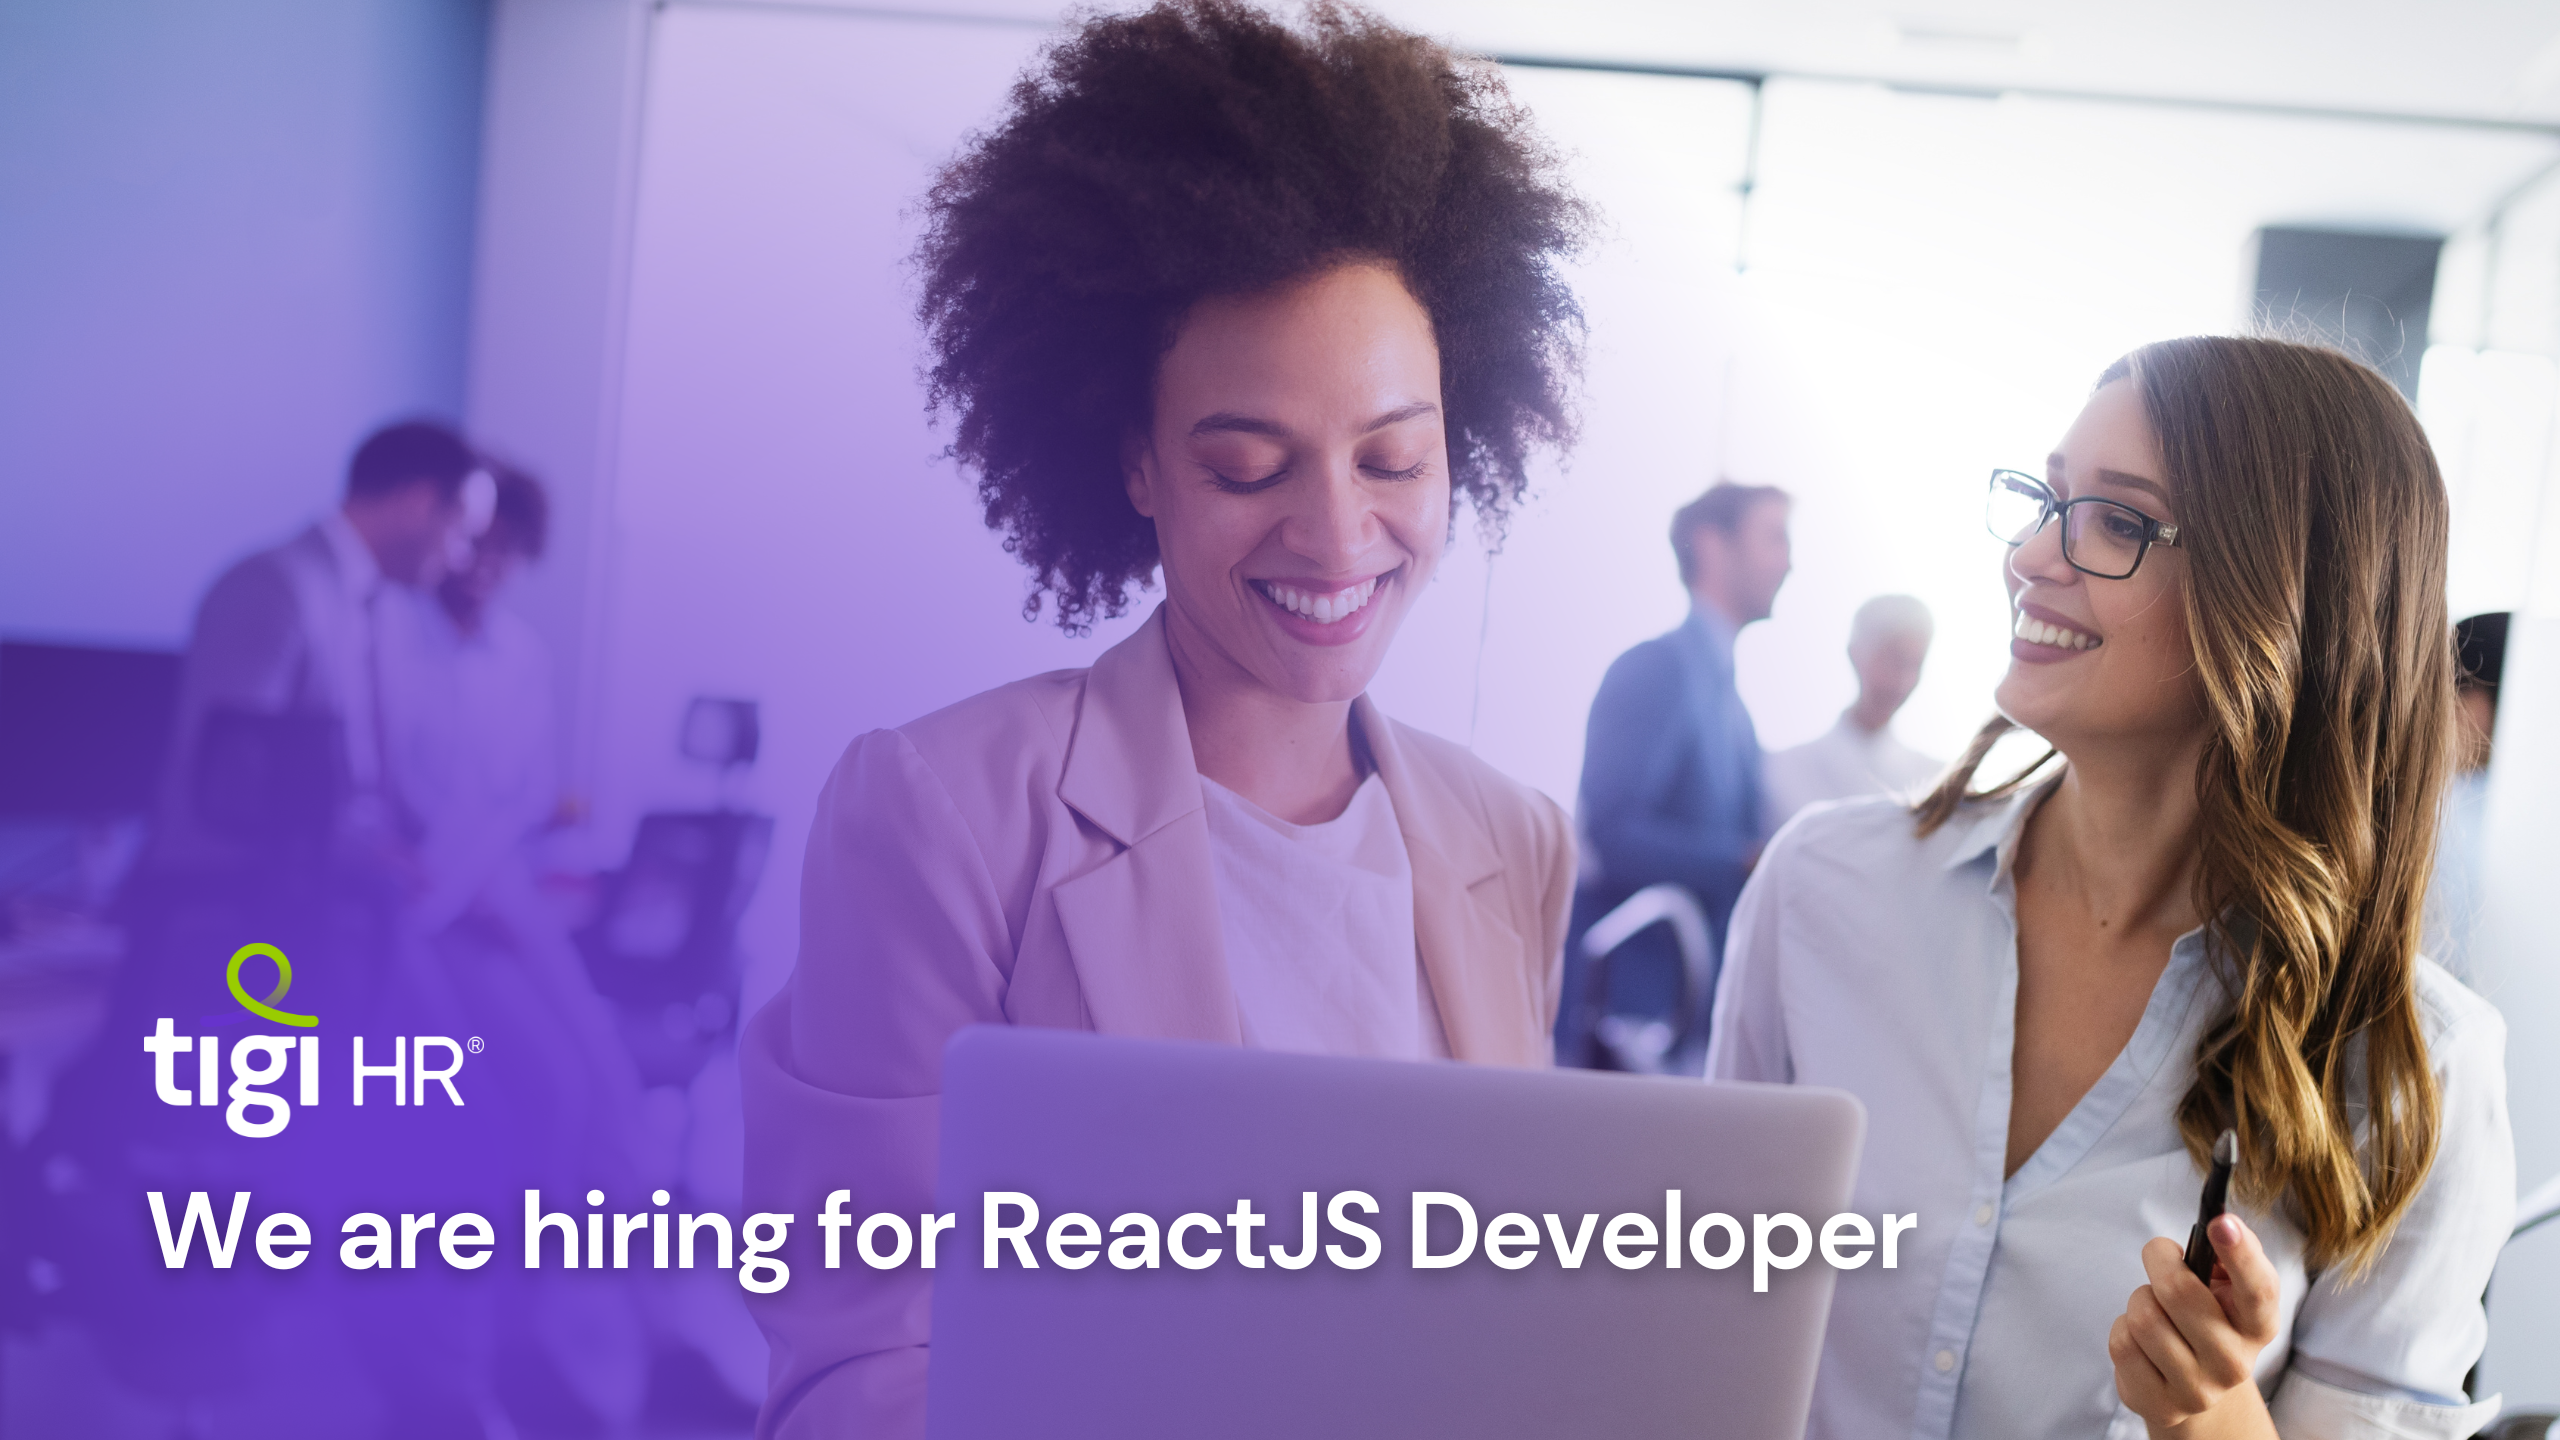 We are hiring ReactJS Developer. Find jobs for ReactJS Developer.